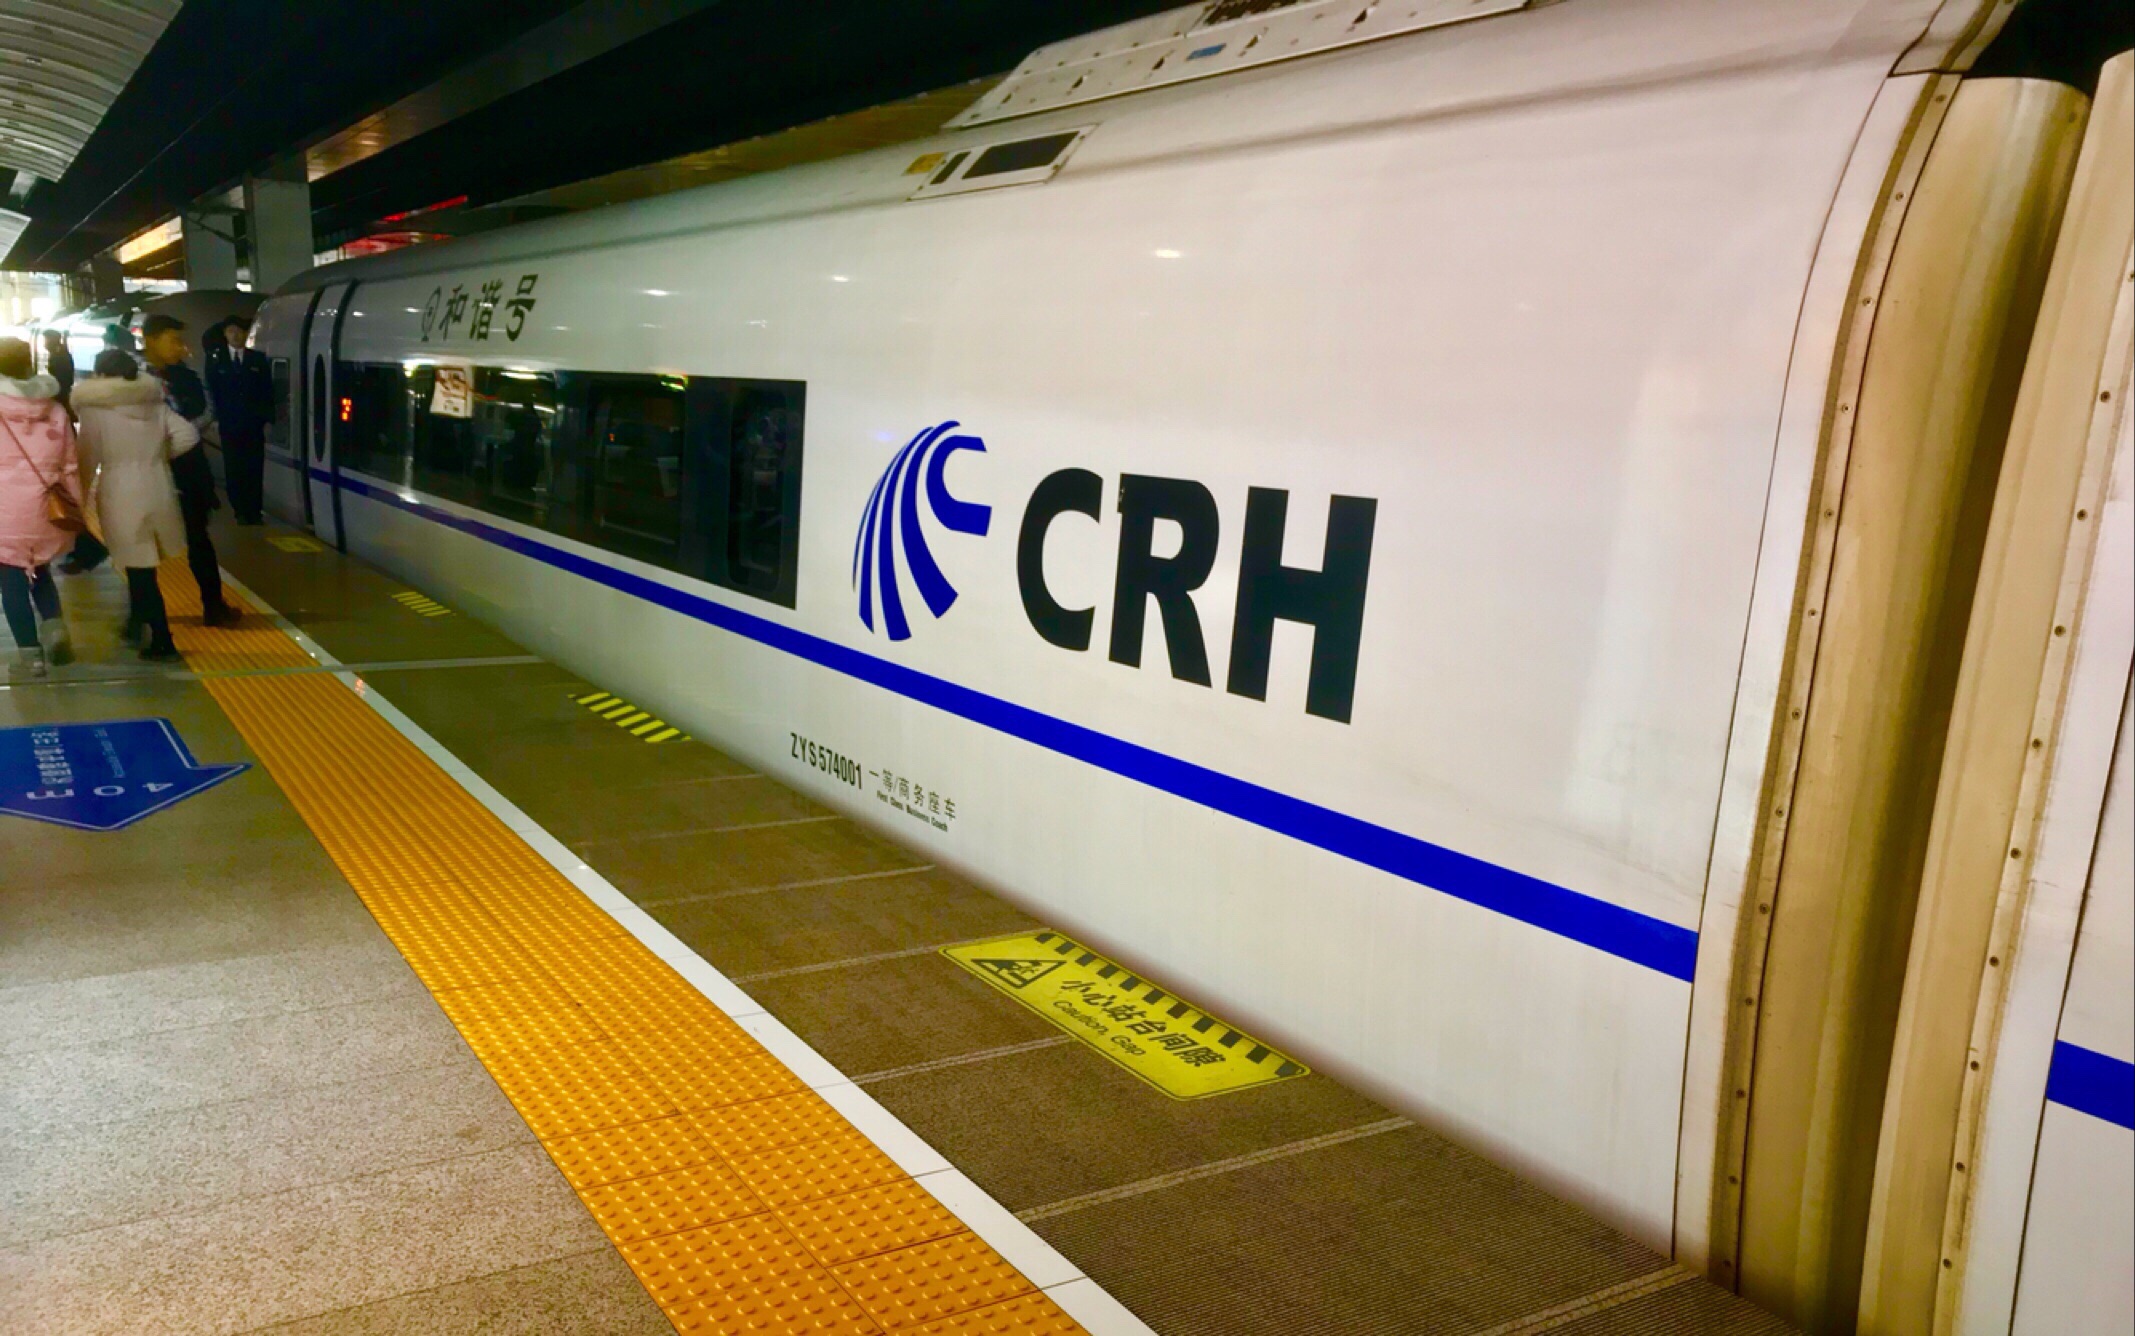 【科技-机械/铁路】【原创】g143次列车(crh380bl-5537)京沪高铁北京